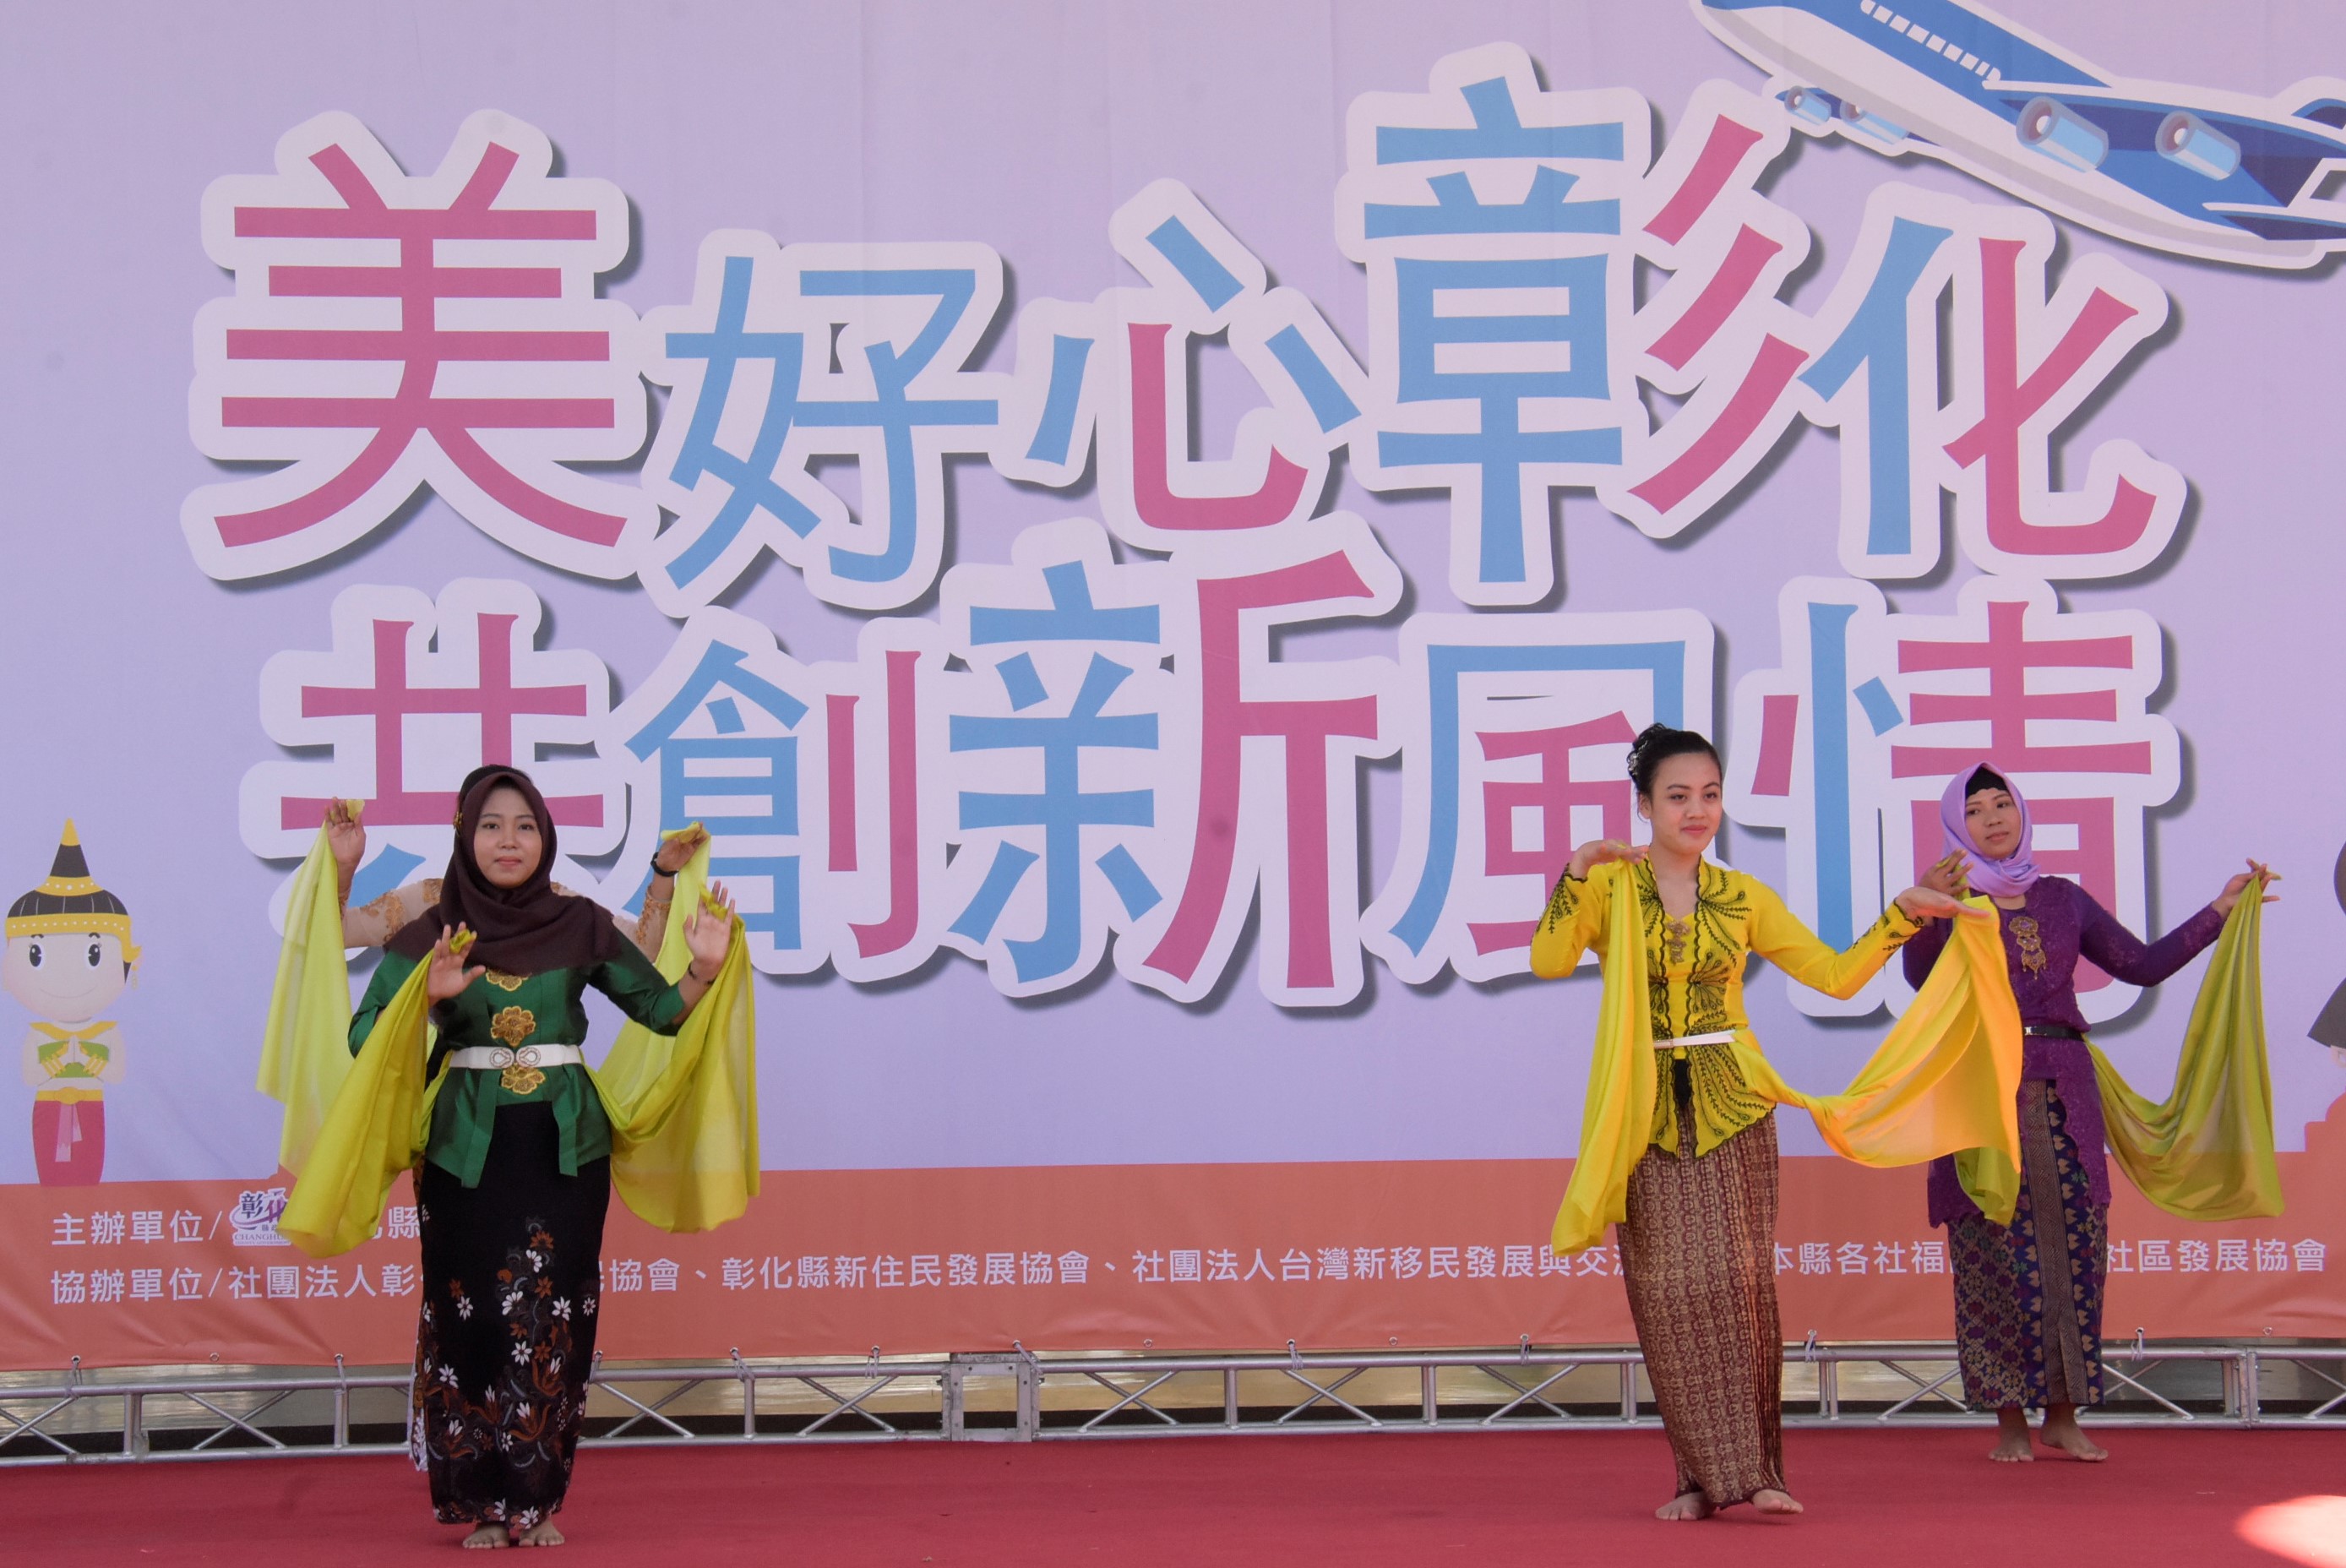 การแสดงเต้นรำของผู้ตั้งถิ่นฐานใหม่ในงานเฉลิมฉลองวันย้ายถิ่นฐานสากลประจำปี 2019 มณฑลจางฮั่ว (ภาพจาก รัฐบาลมณฑลจางฮั่ว)